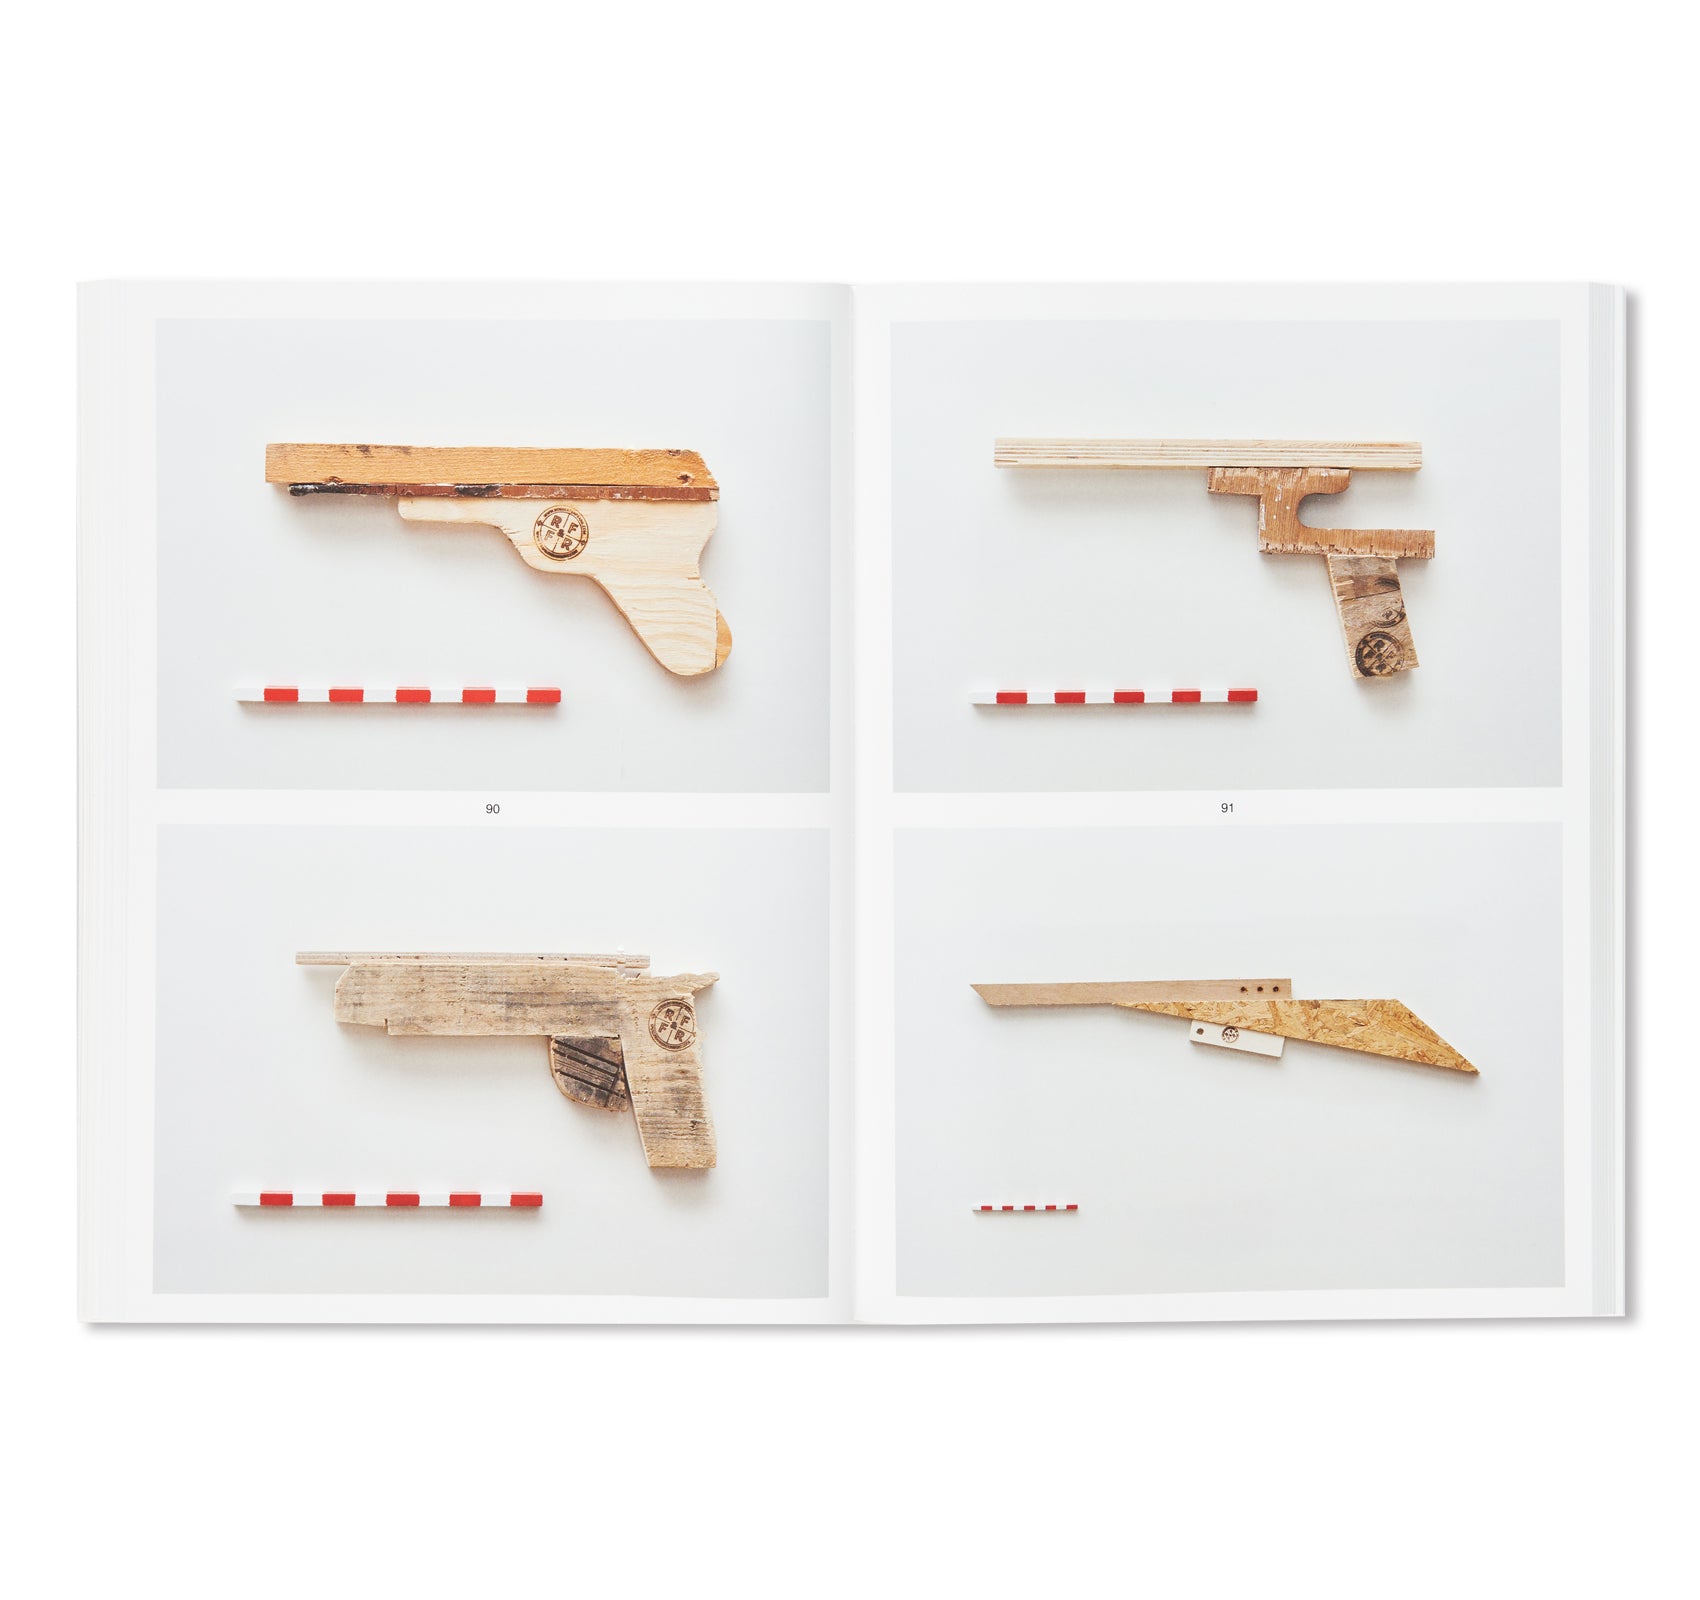 GUNS by Robbert & Frank, Frank & Robbert